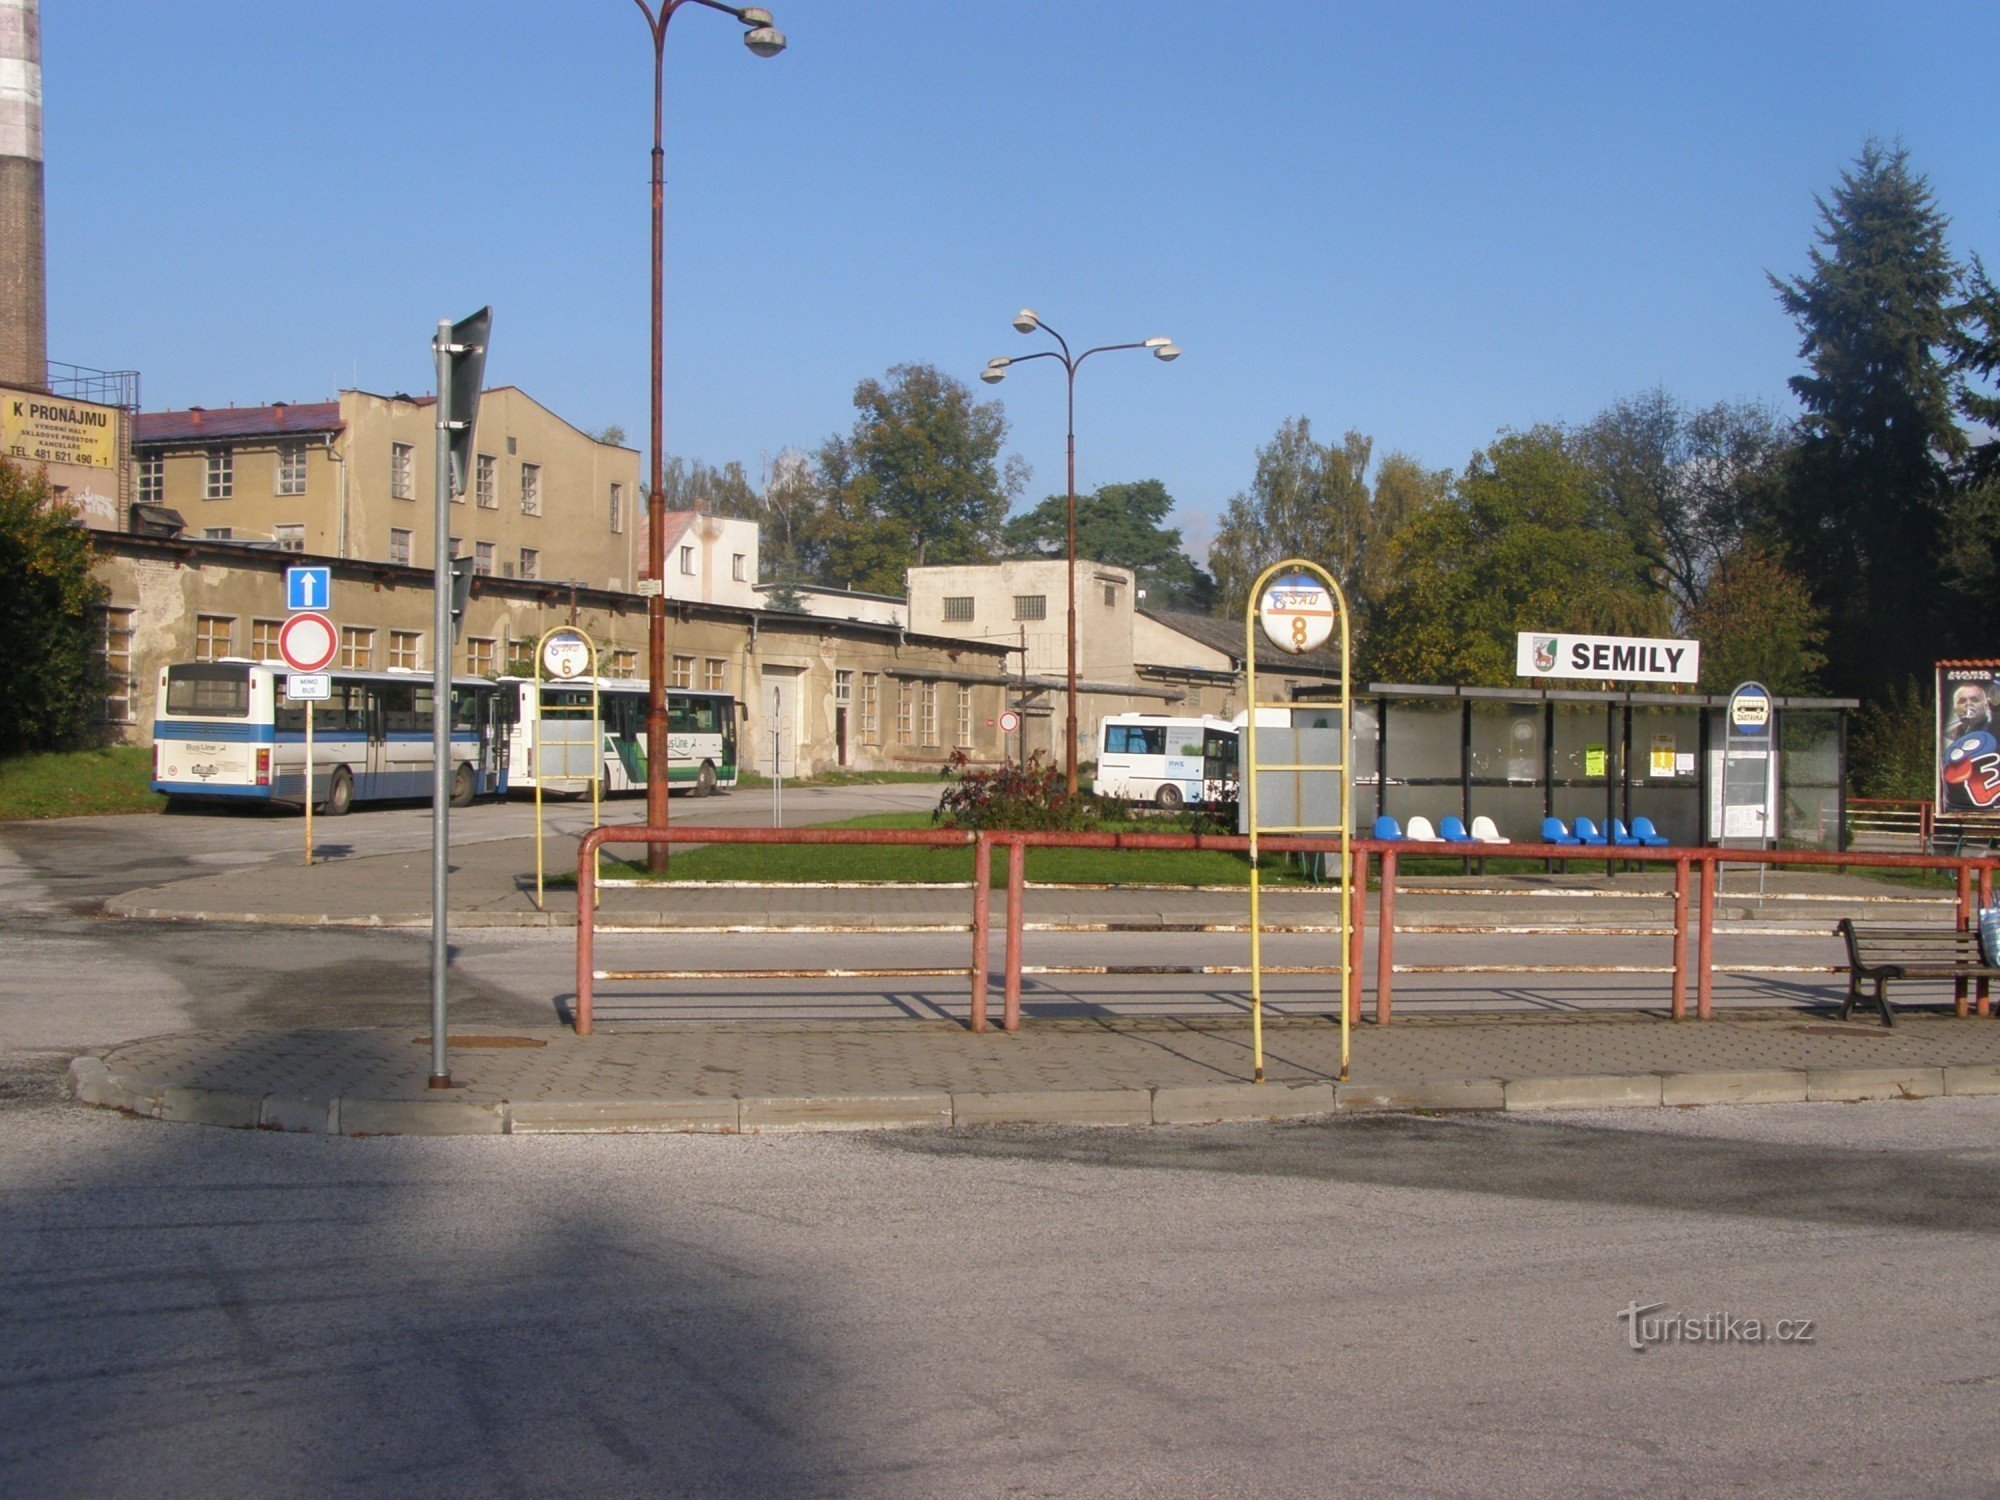 Semily - dworzec autobusowy